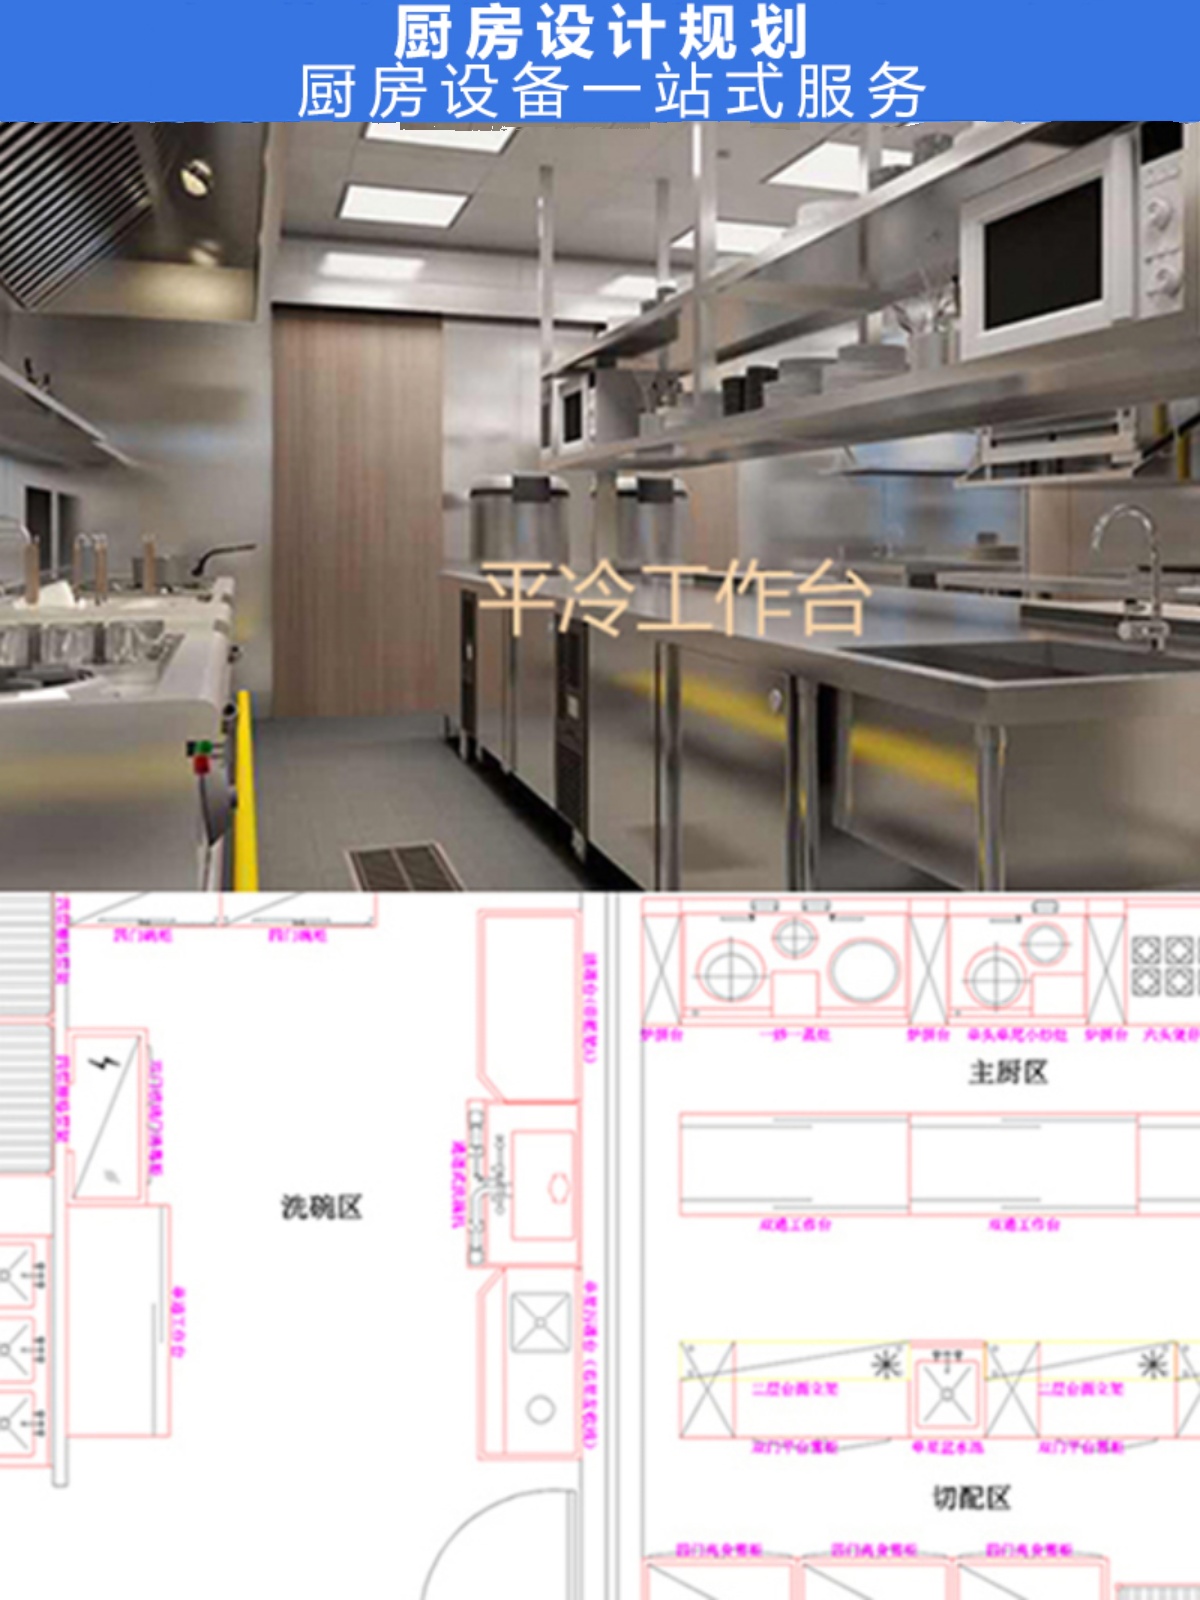 商用厨房 酒店食堂餐厅厨房设备商用工程设计施工方案设备CAD配套 厨房电器 其他商用厨电 原图主图